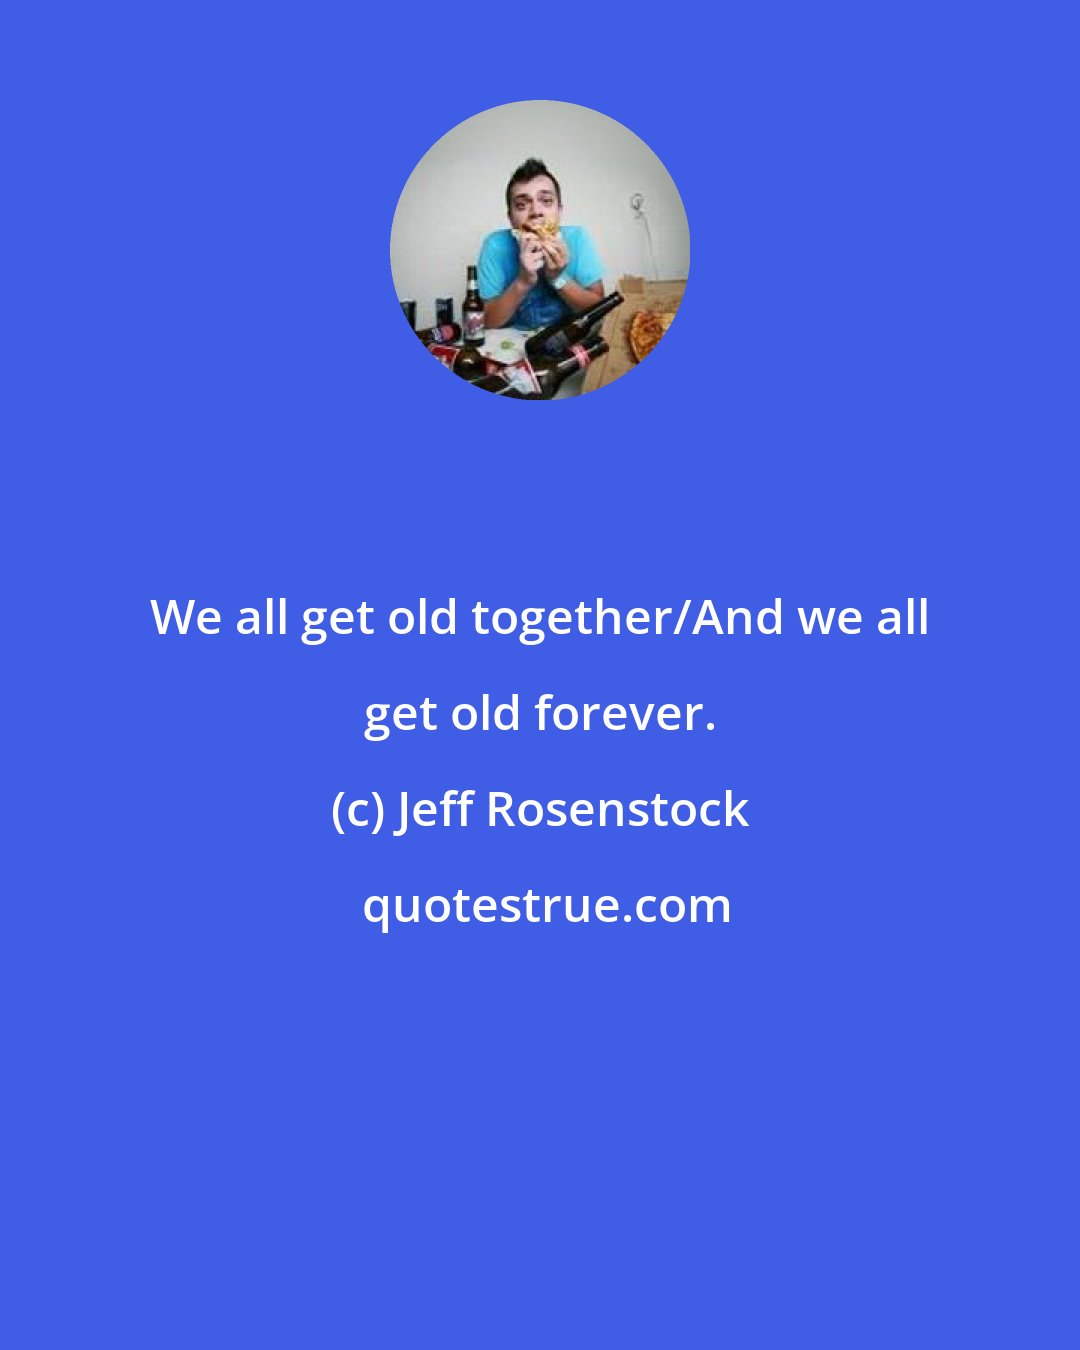 Jeff Rosenstock: We all get old together/And we all get old forever.